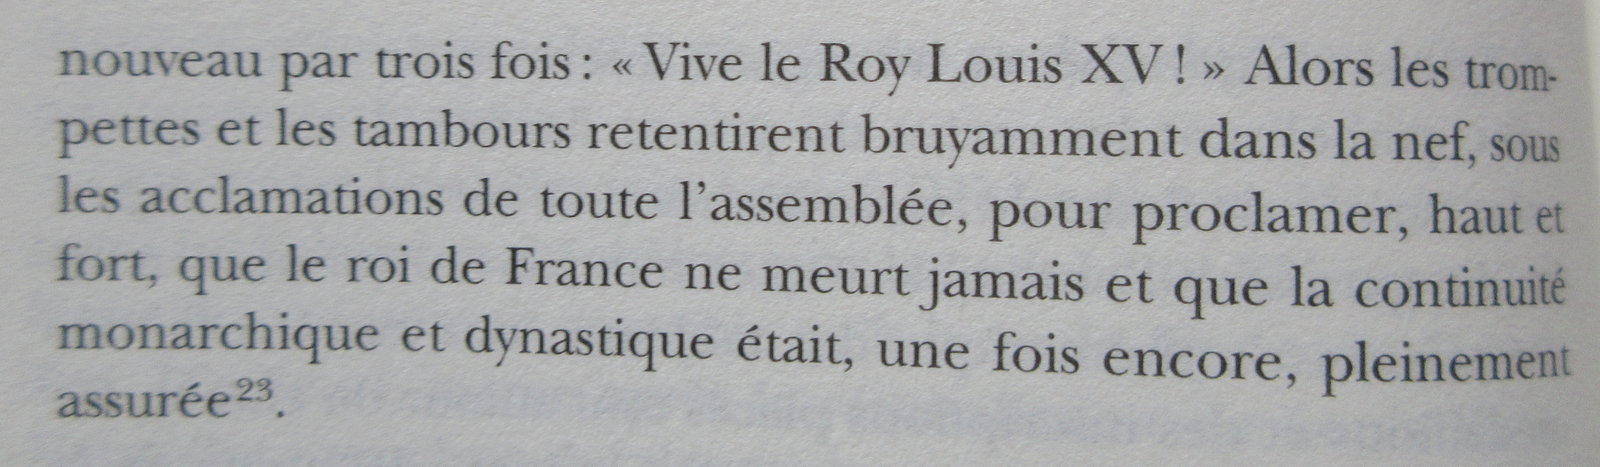 Le cérémonial des funérailles de Louis XIV 200326045816894784